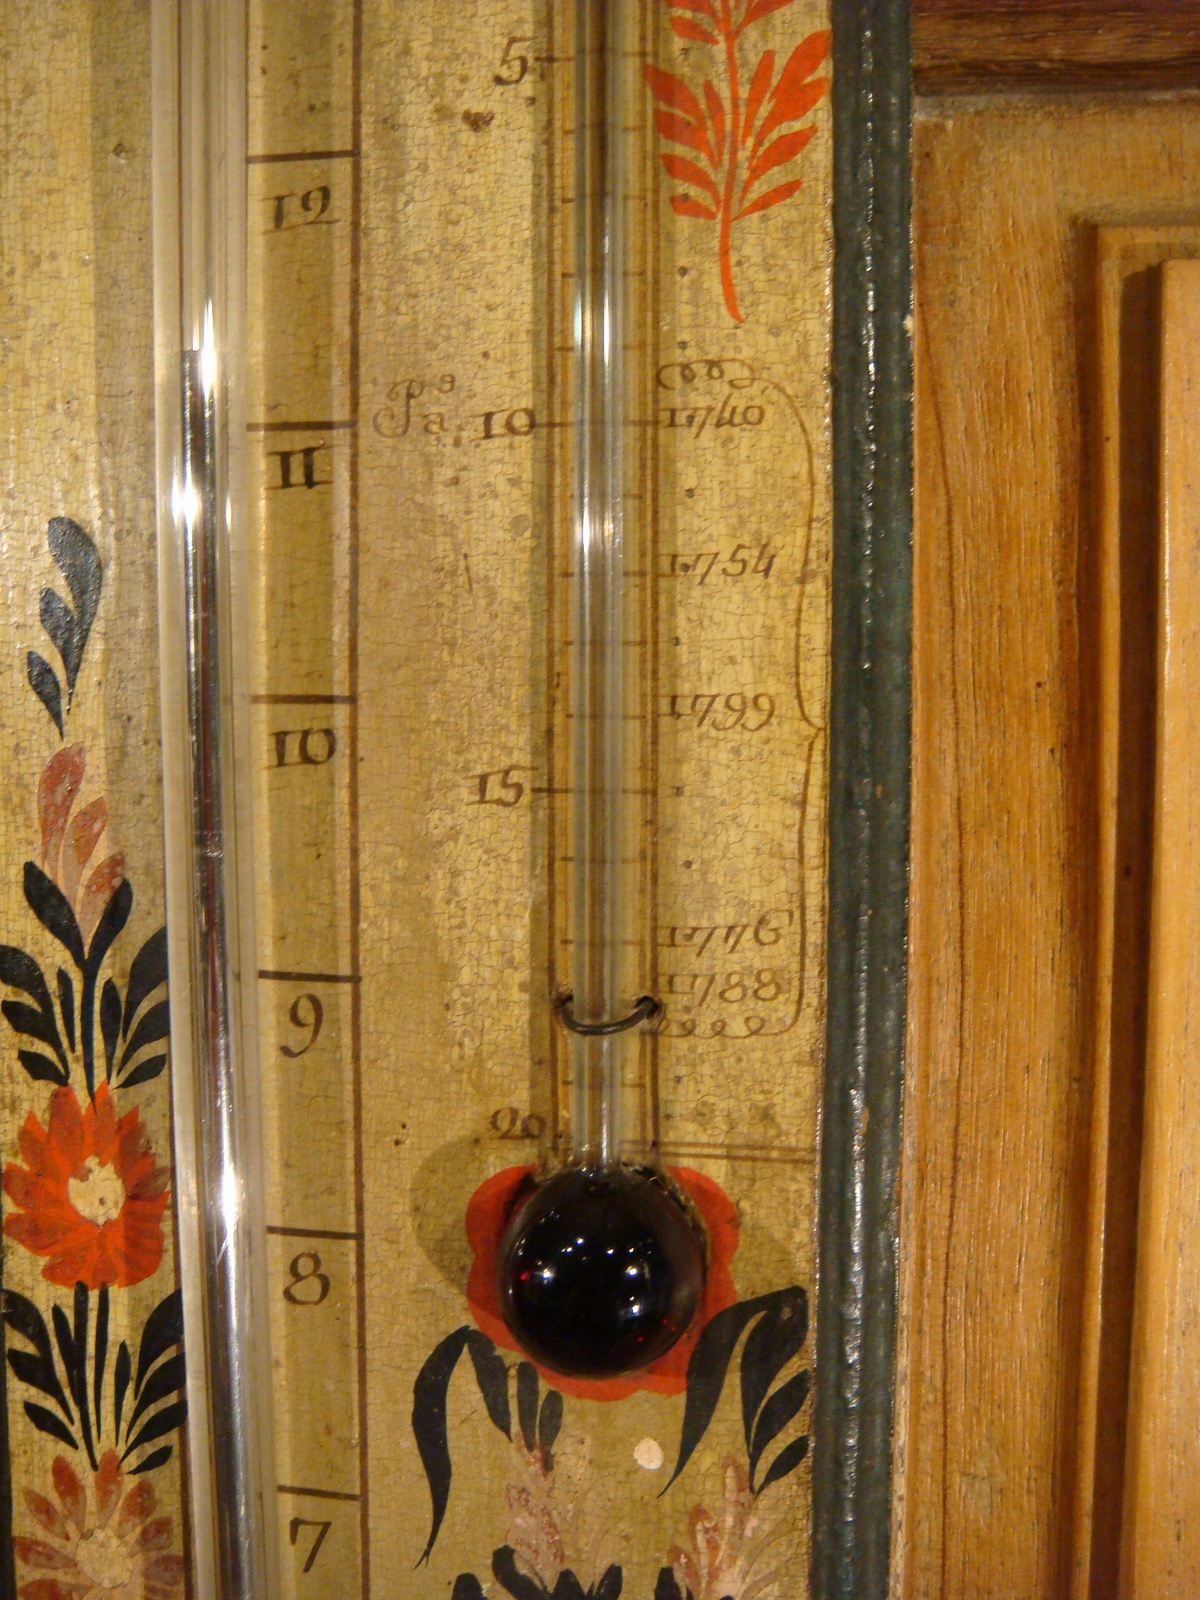 Ancien baromètre thermomètre selon Réaumur Molgatini Frères bois laqué